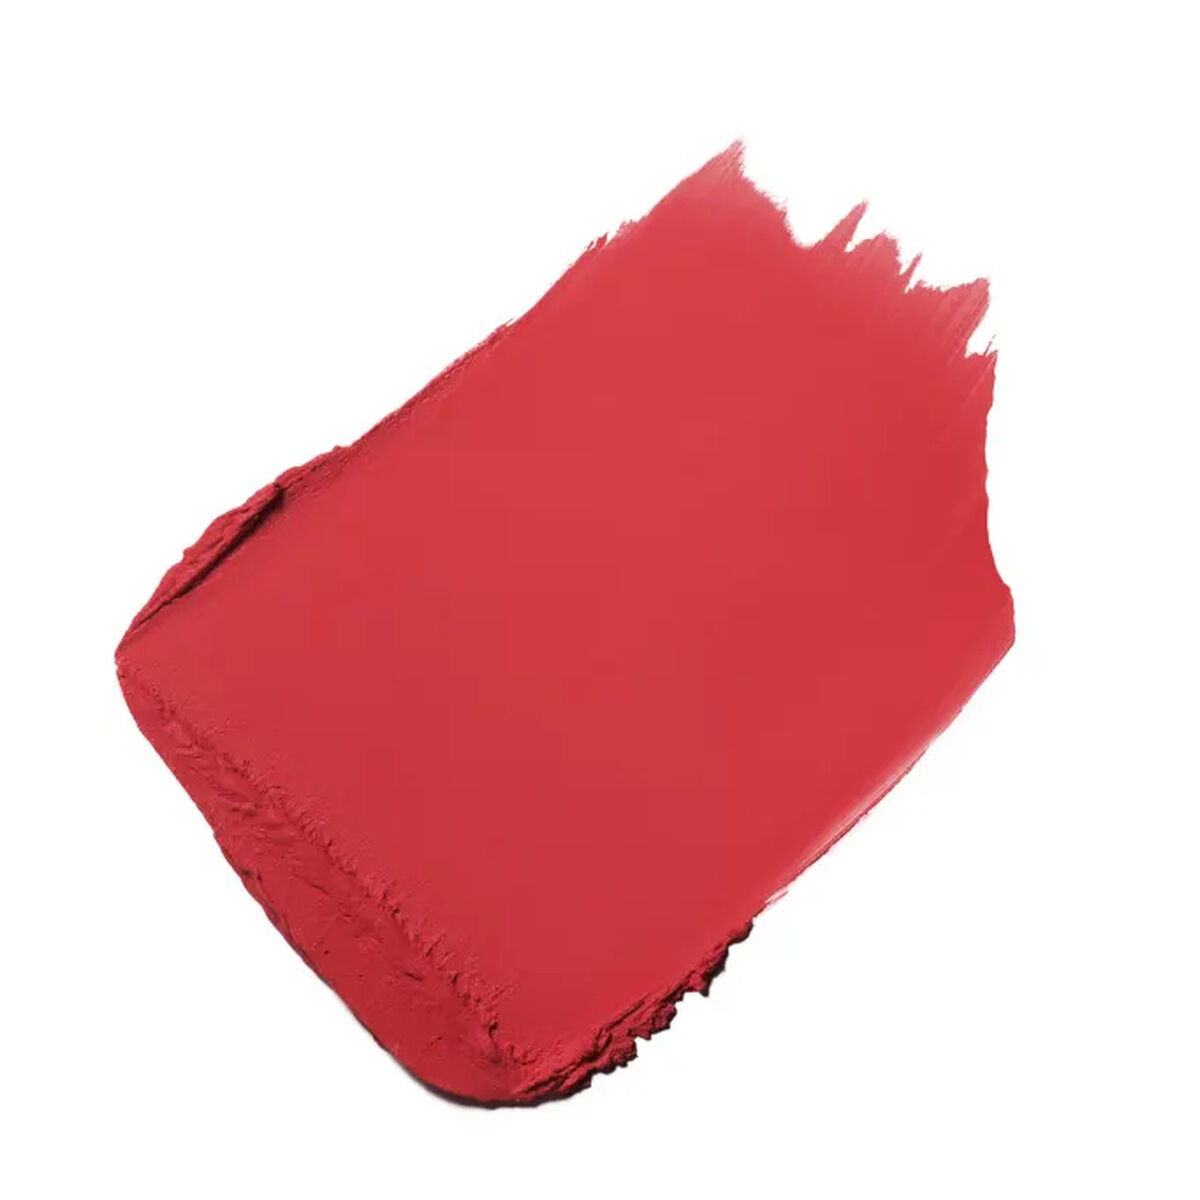 Kaufe Lippenstift Chanel Rouge Allure Velvet Nº 02:00 3,5 g bei AWK Flagship um € 72.00